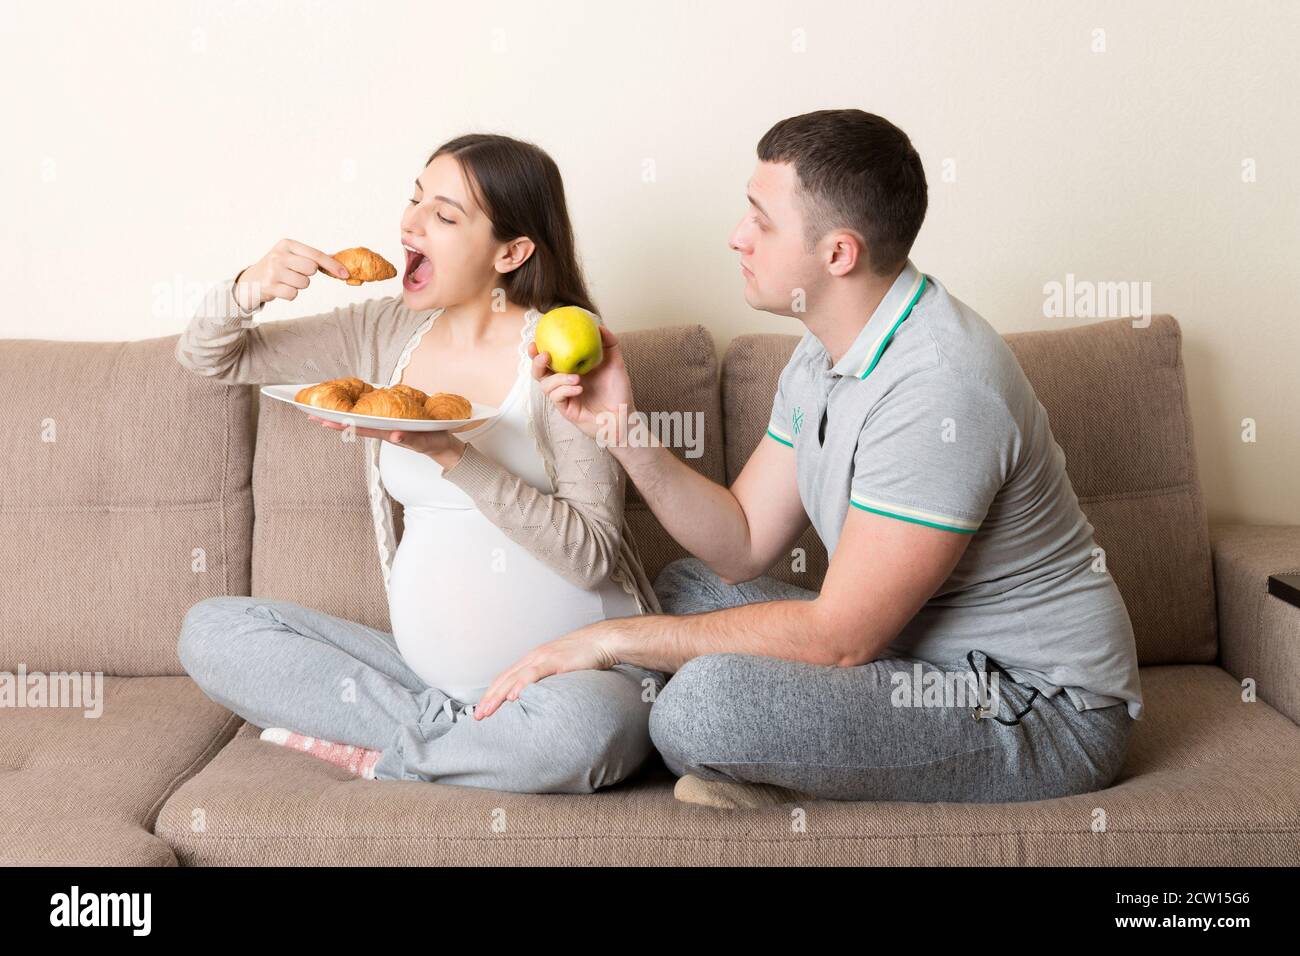 Le mari essaie de nourrir sa femme enceinte avec une pomme mais elle veut  un croissant assis sur le canapé à la maison. Régime alimentaire malsain  pendant la grossesse concept Photo Stock -